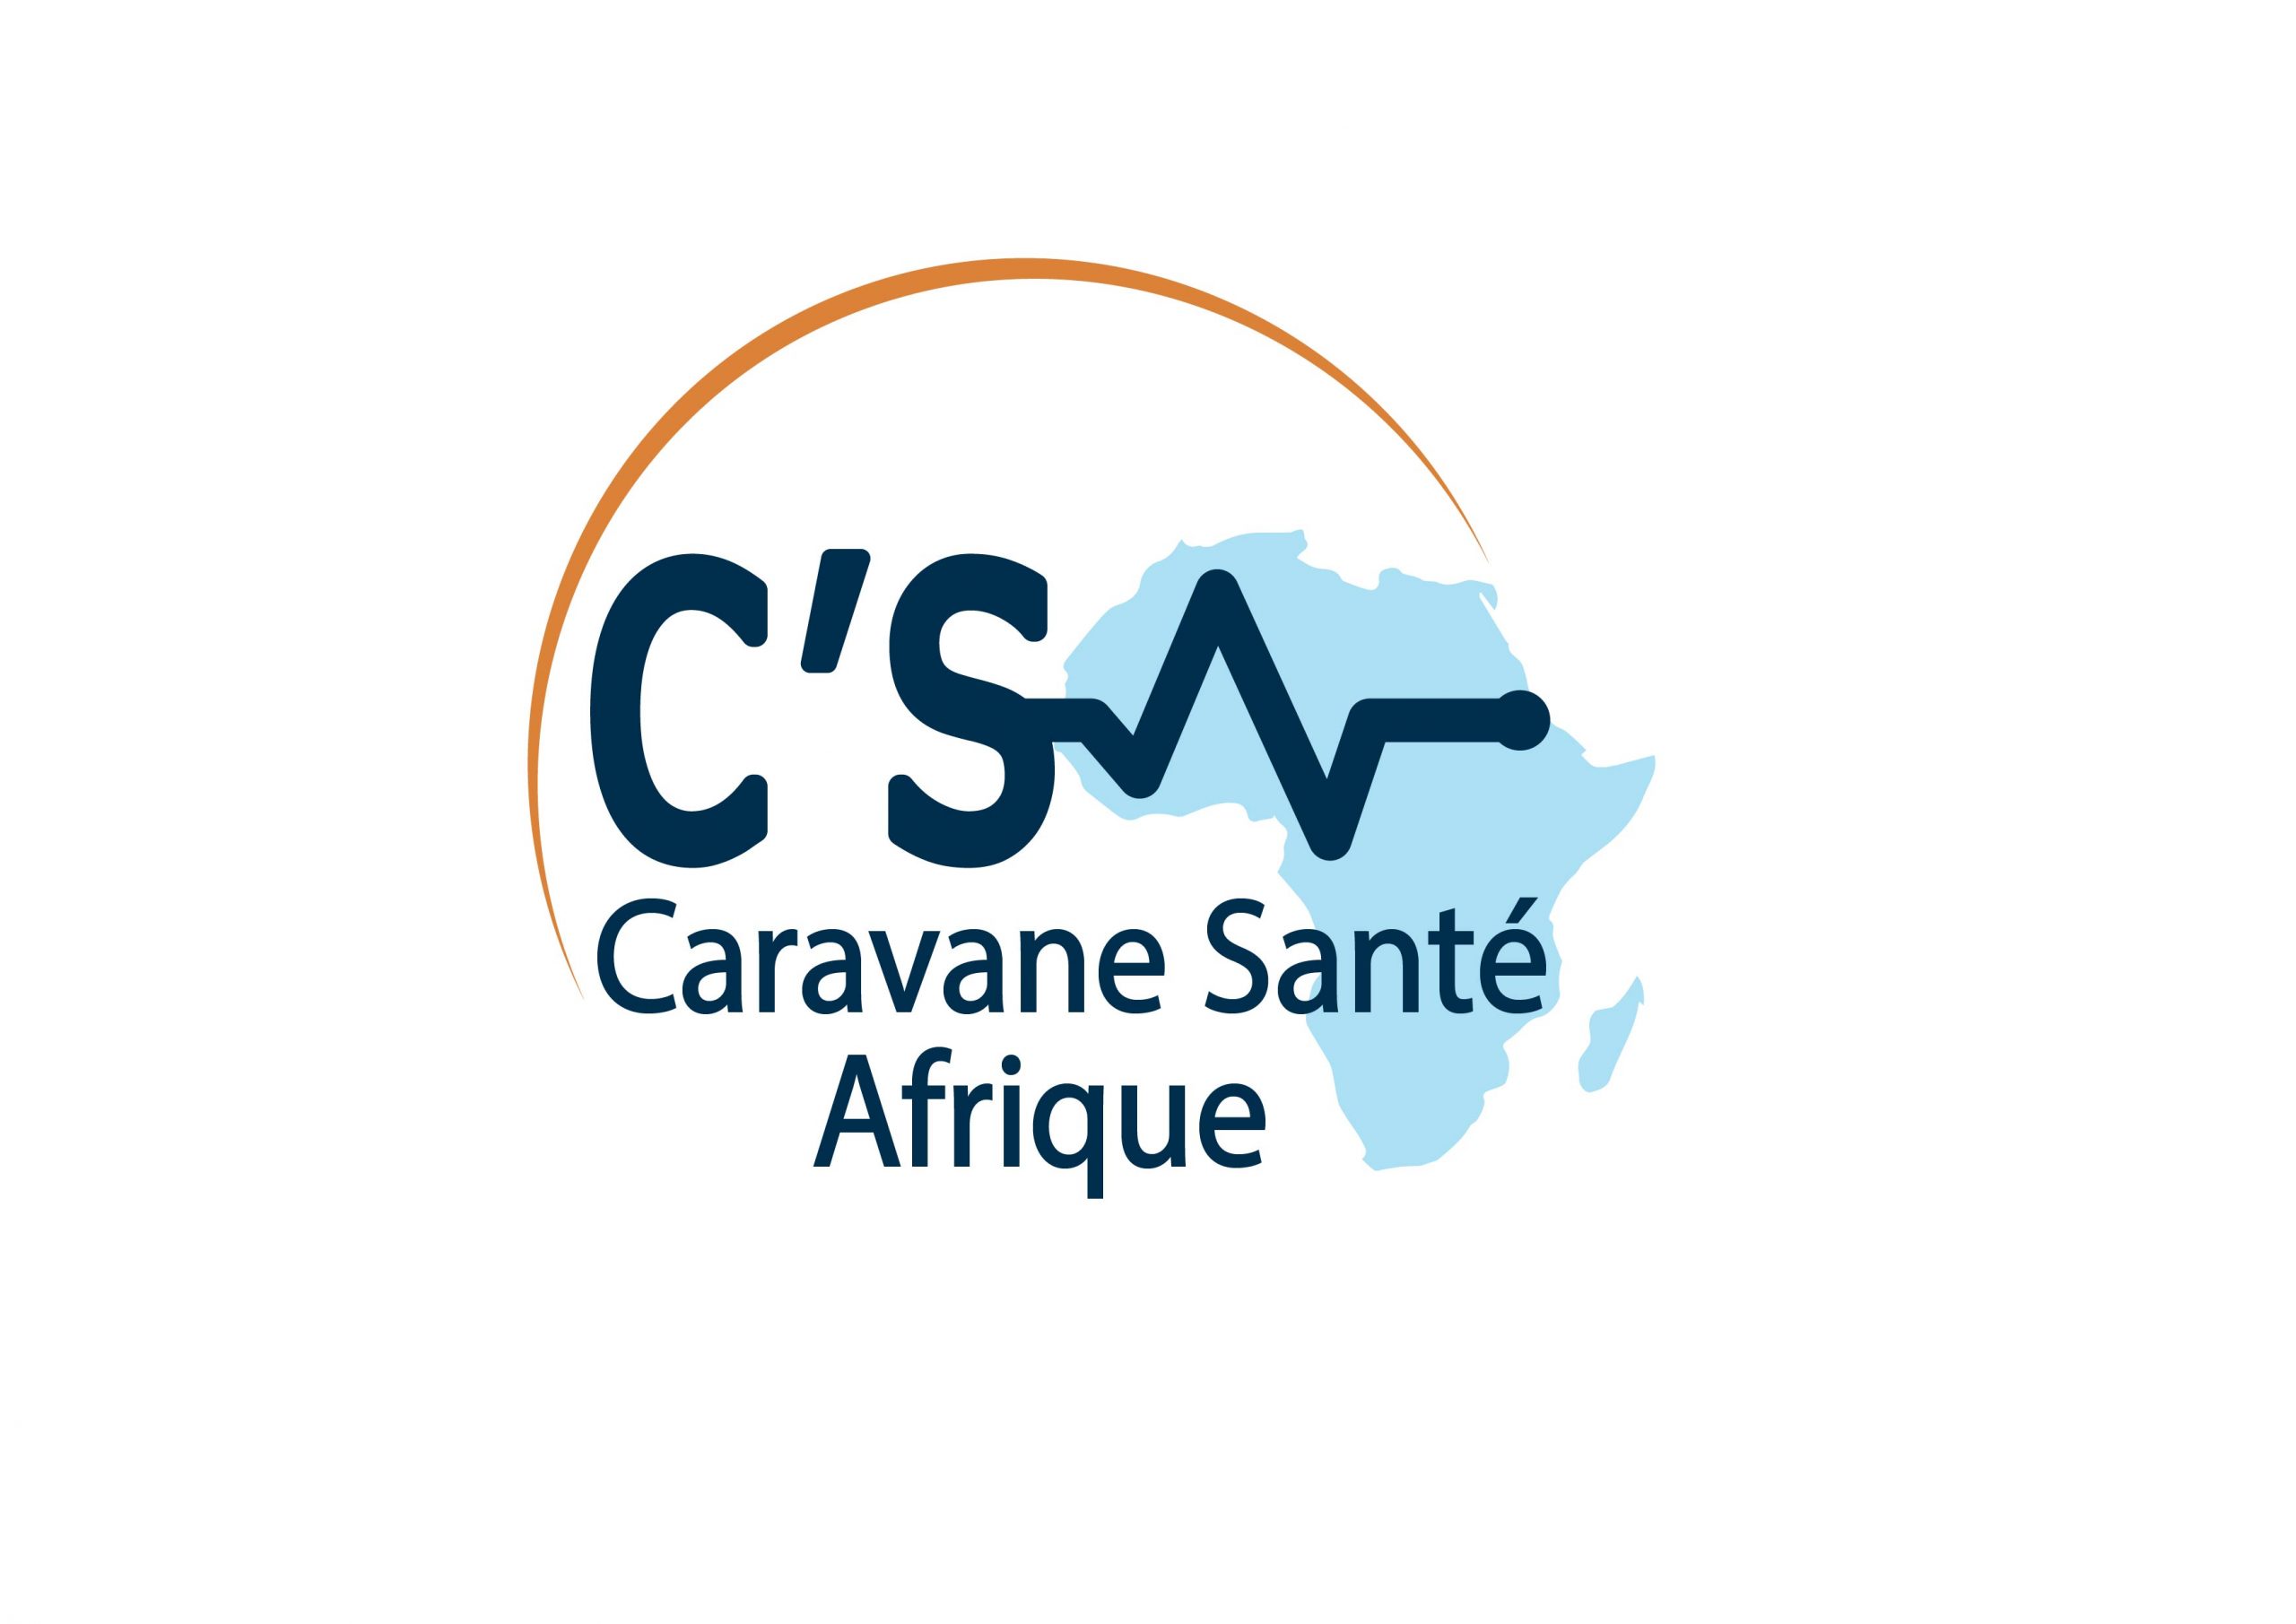 Soutenez le challenge des 1000 vues sur YouTube de la video « La Caravane Santé Afrique (C’SA), c’est ça »